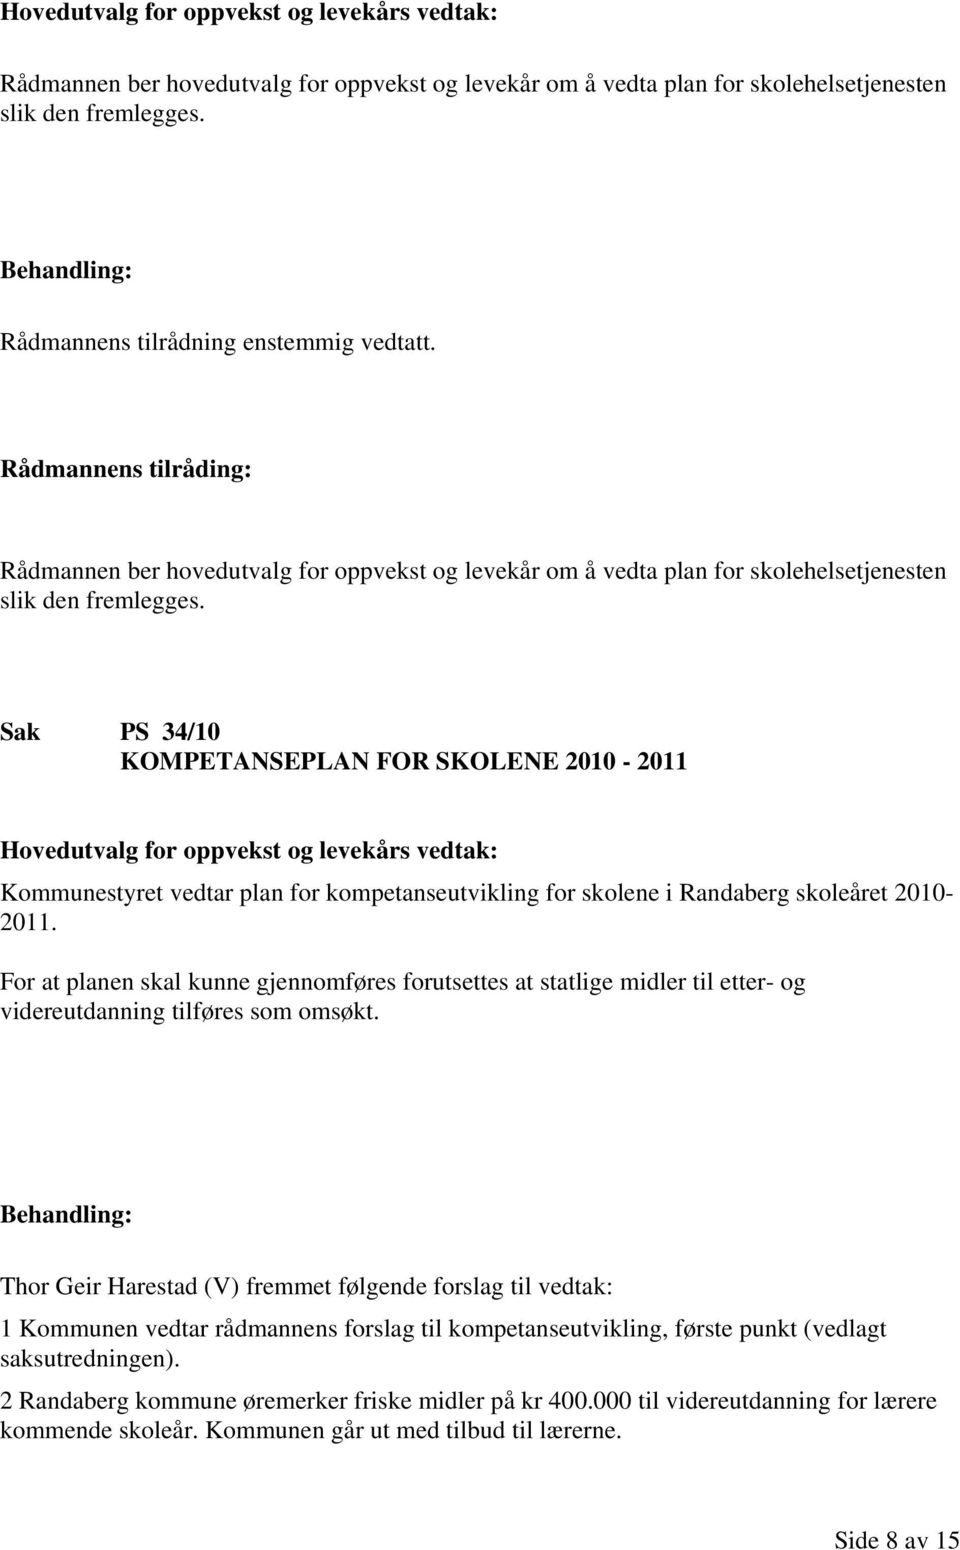 Sak PS 34/10 KOMPETANSEPLAN FOR SKOLENE 2010-2011 Kommunestyret vedtar plan for kompetanseutvikling for skolene i Randaberg skoleåret 2010-2011.